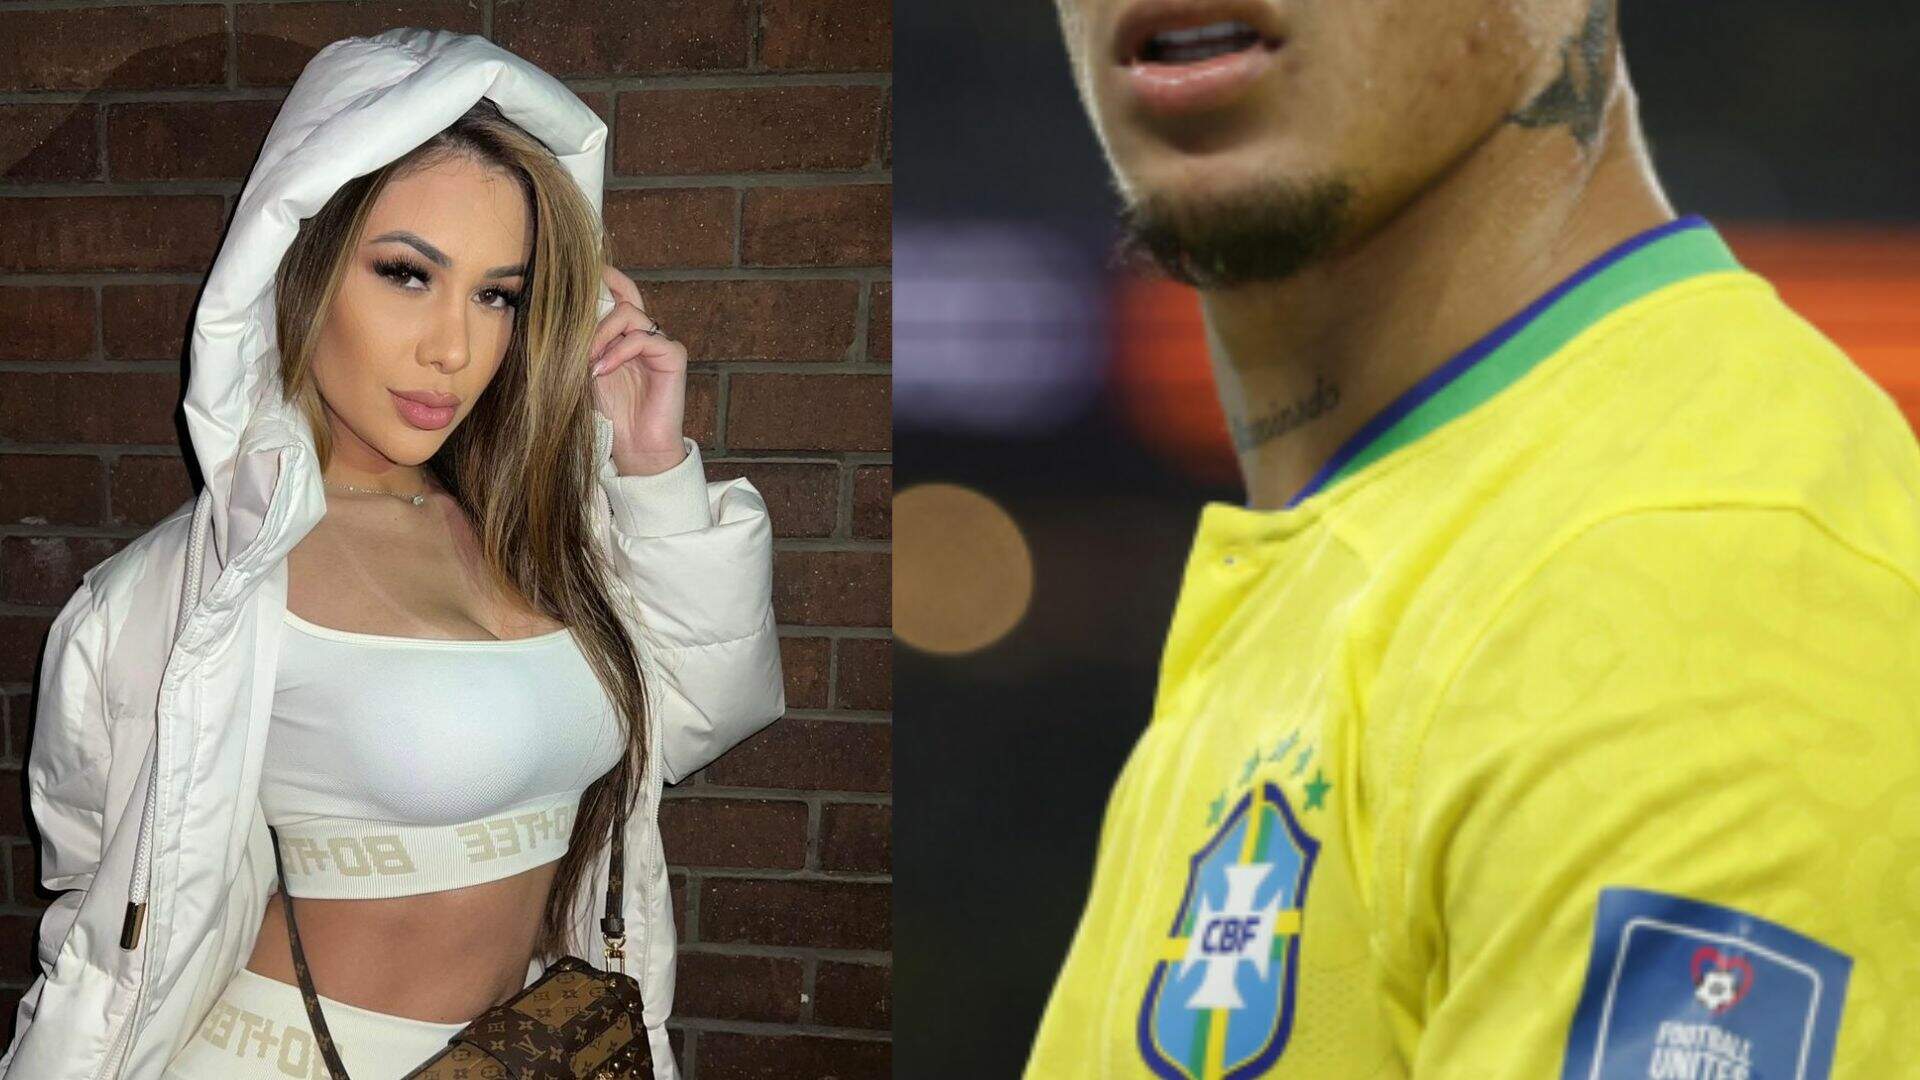 Após ter vídeos e áudios de agressão contra ex publicados, jogador da seleção brasileira se pronuncia - Metropolitana FM